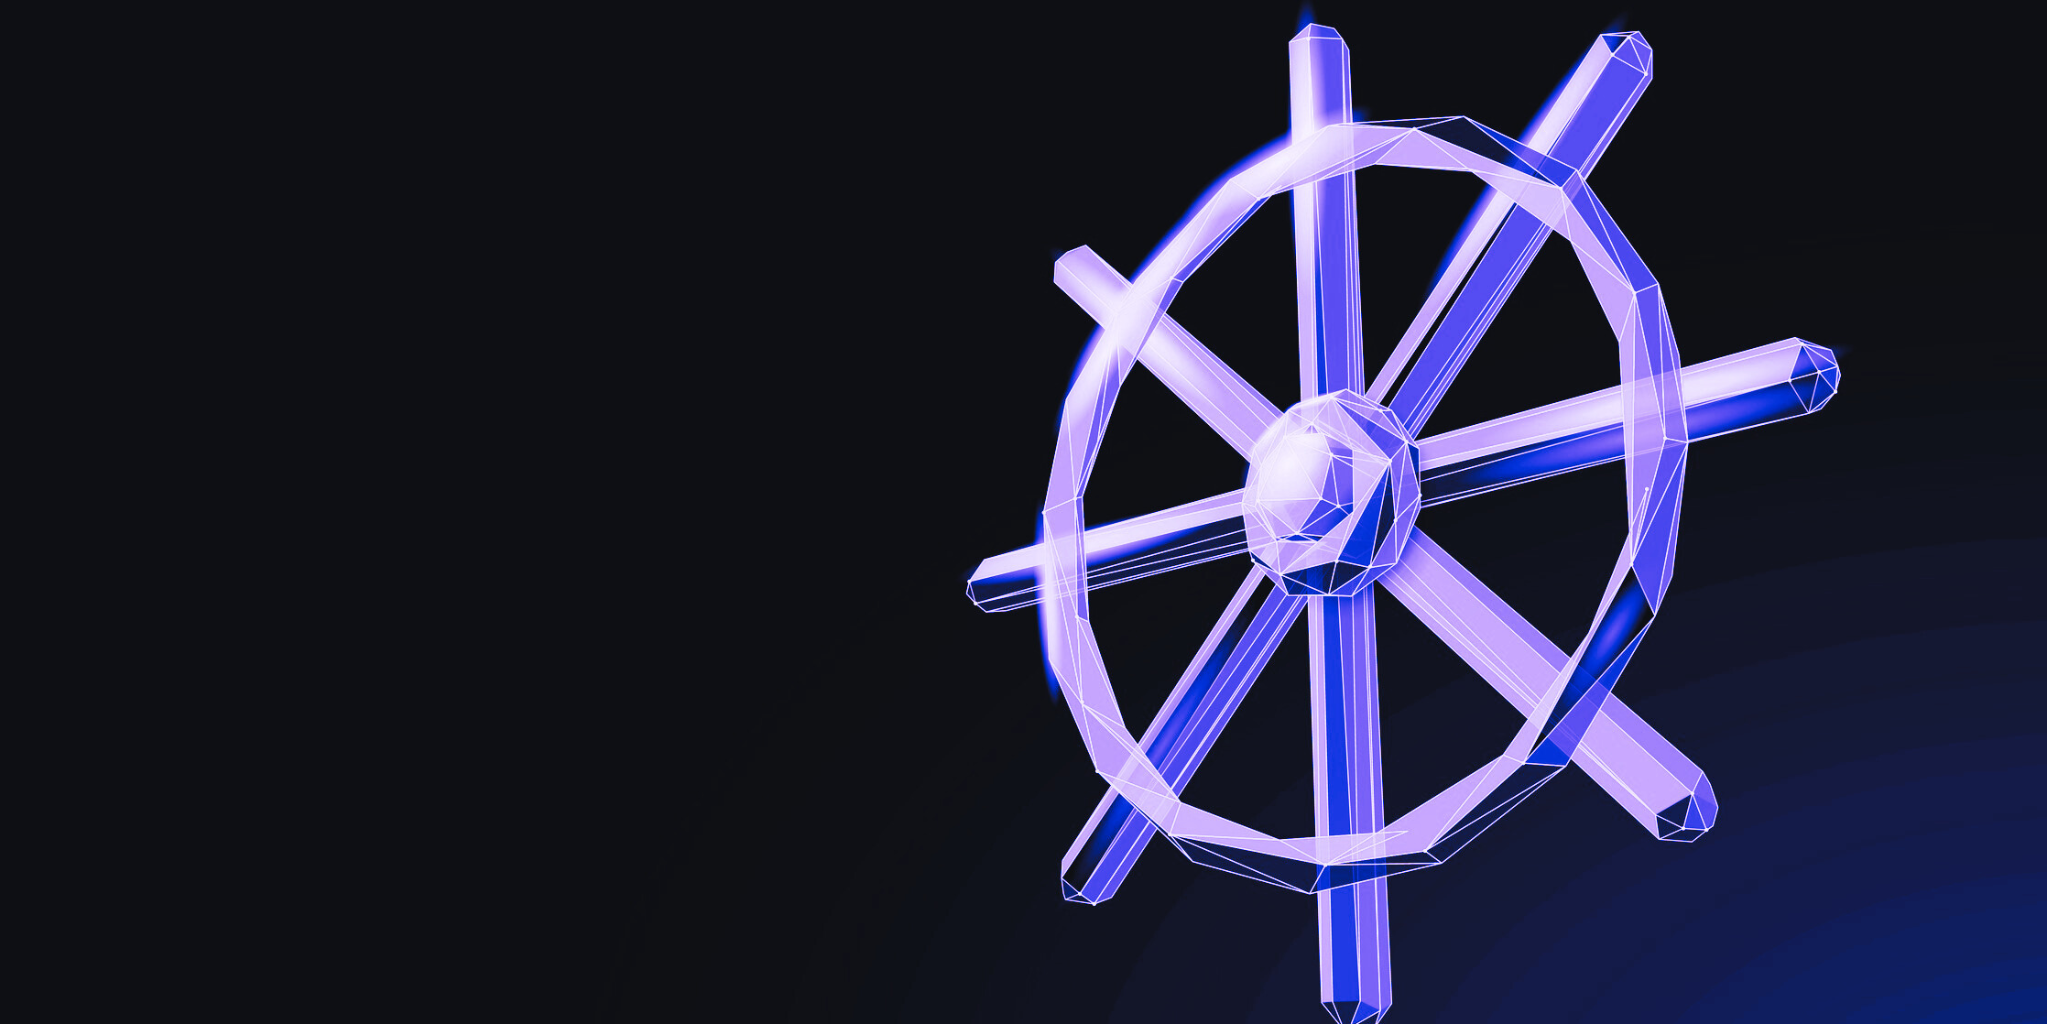 a digital representation of a ship’s helm